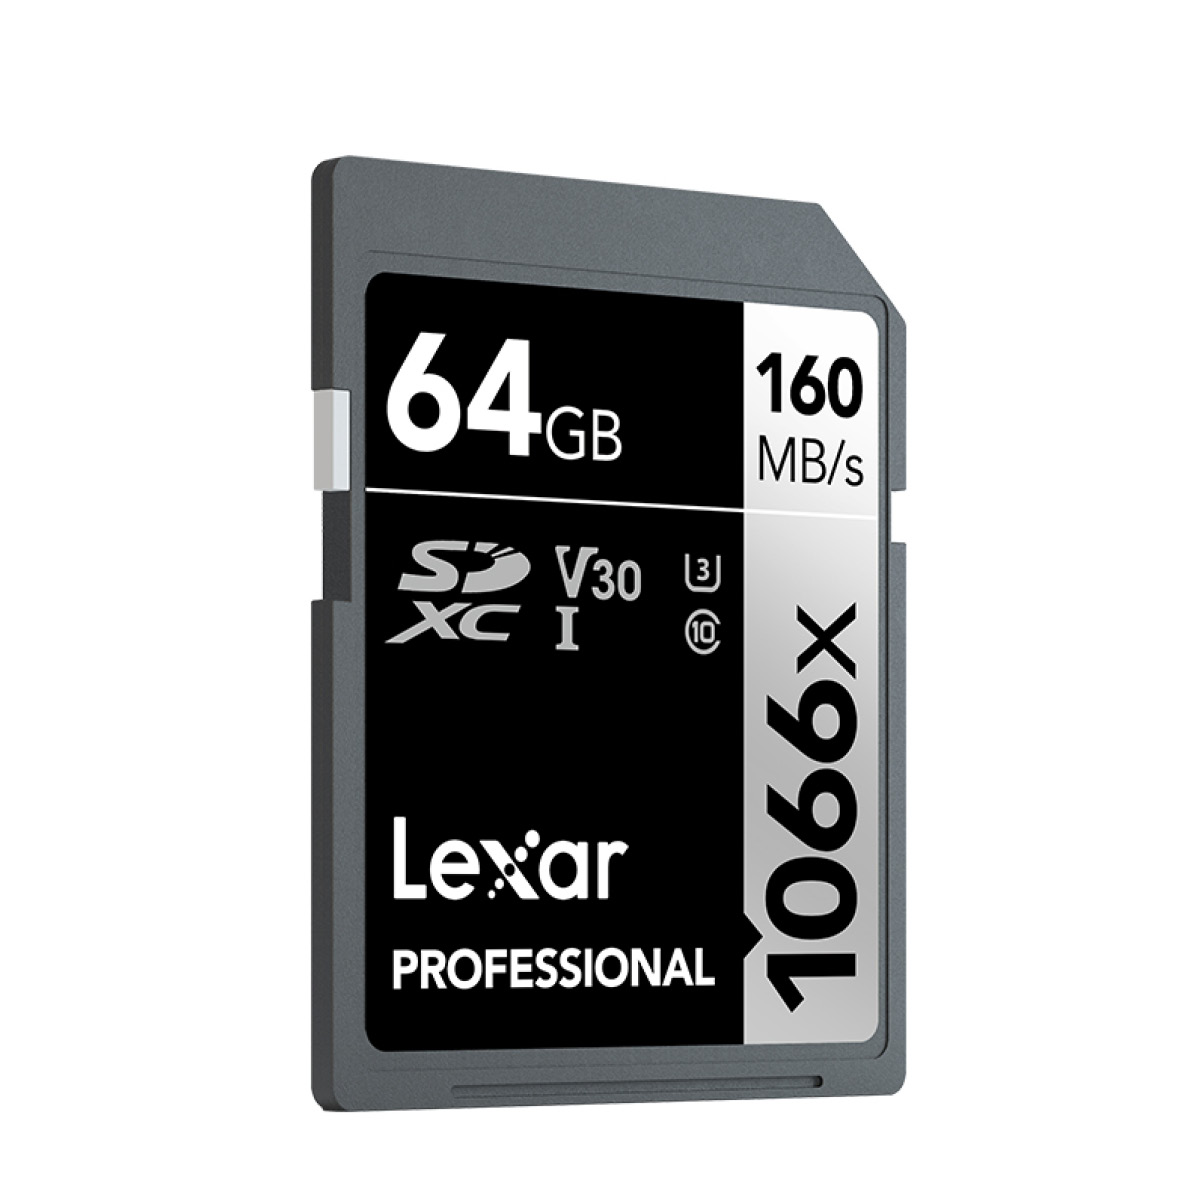 Lexar 64 GB SD 1066x V30 Pro Silver